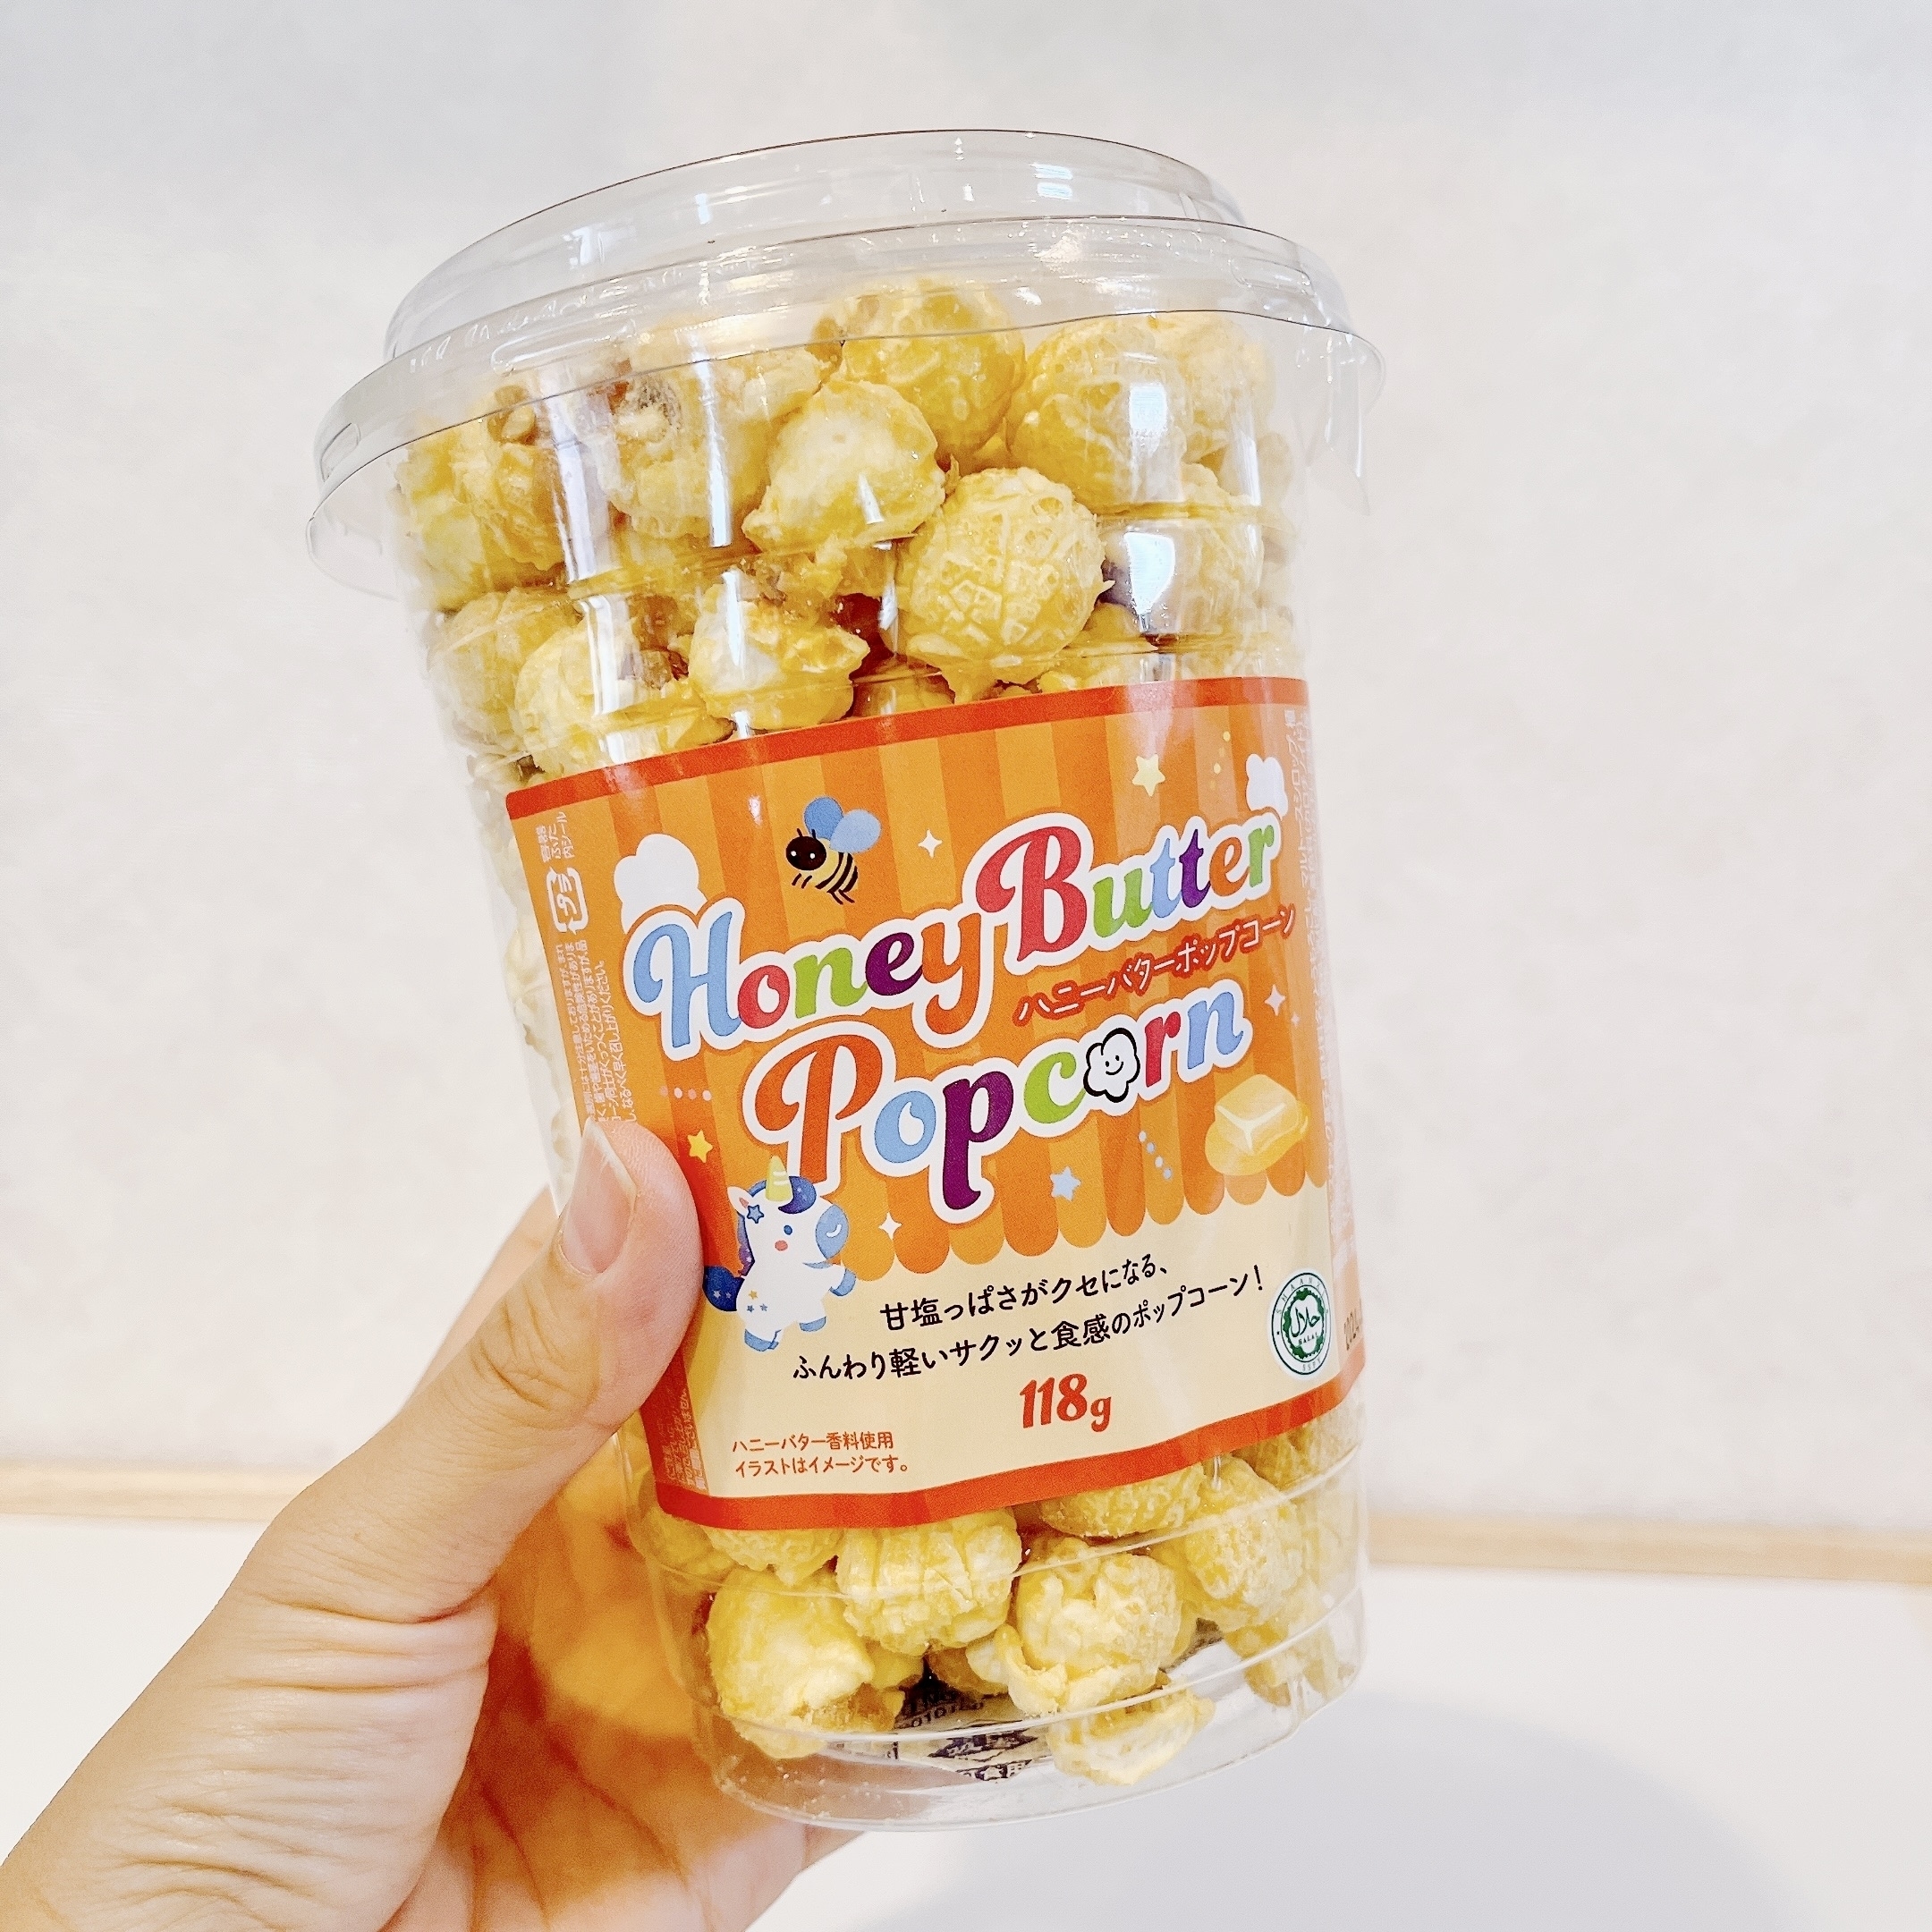 業務スーパーのオススメのお菓子「ハニーバターポップコーン」